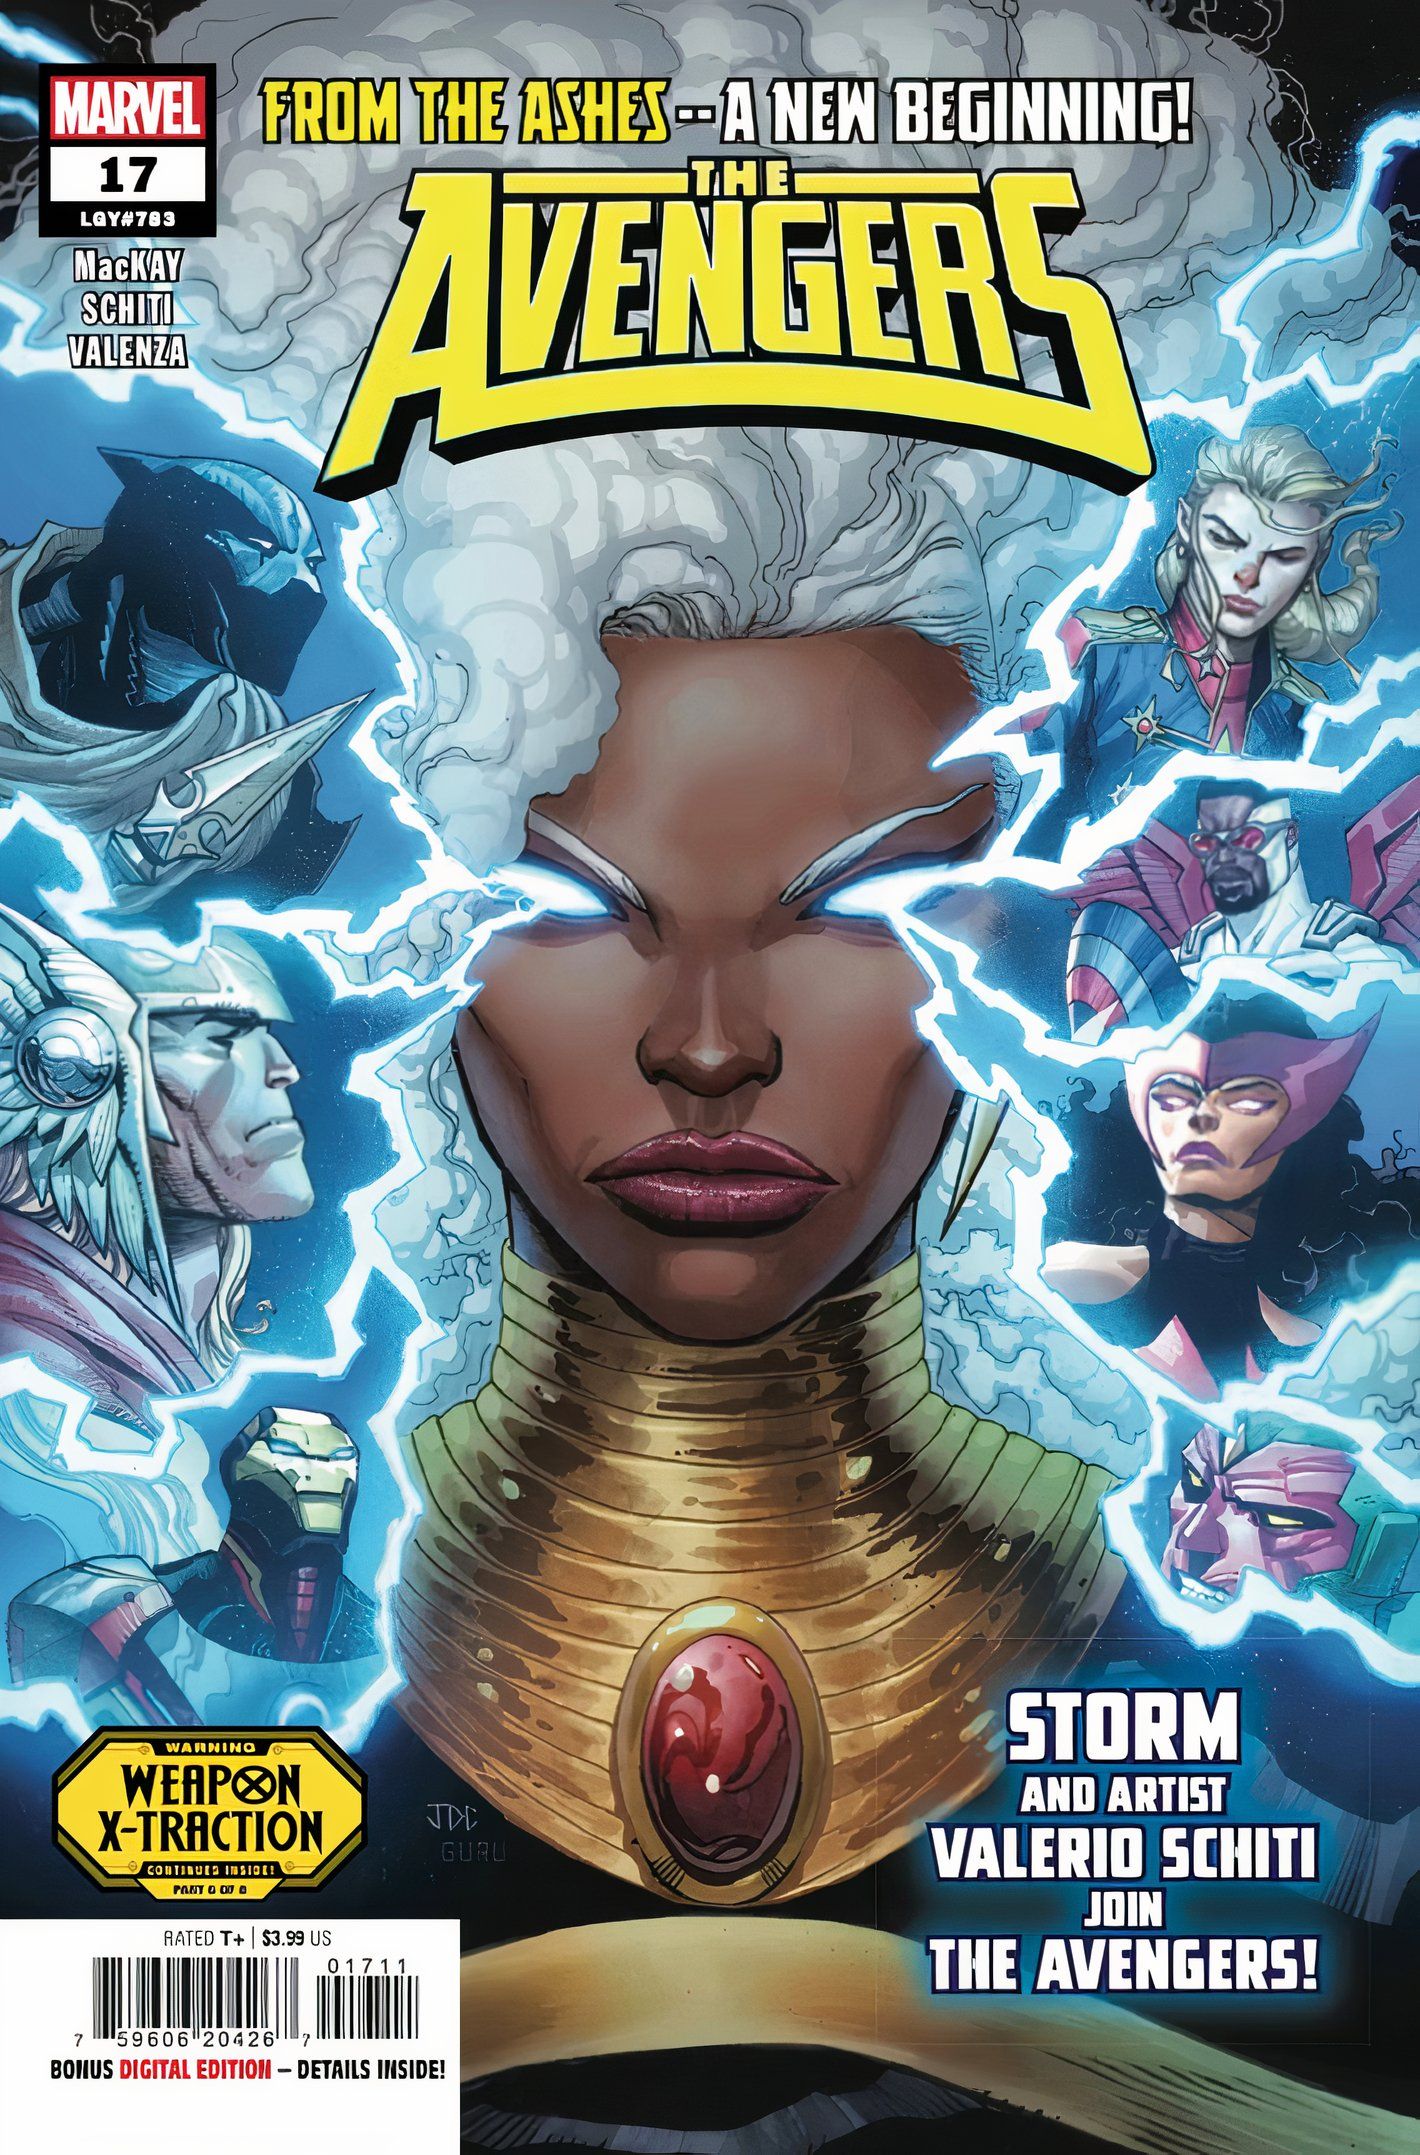 Capa da revista Avengers #17, com Tempestade cercada por uma energia elétrica crepitante e seus novos companheiros de equipe.